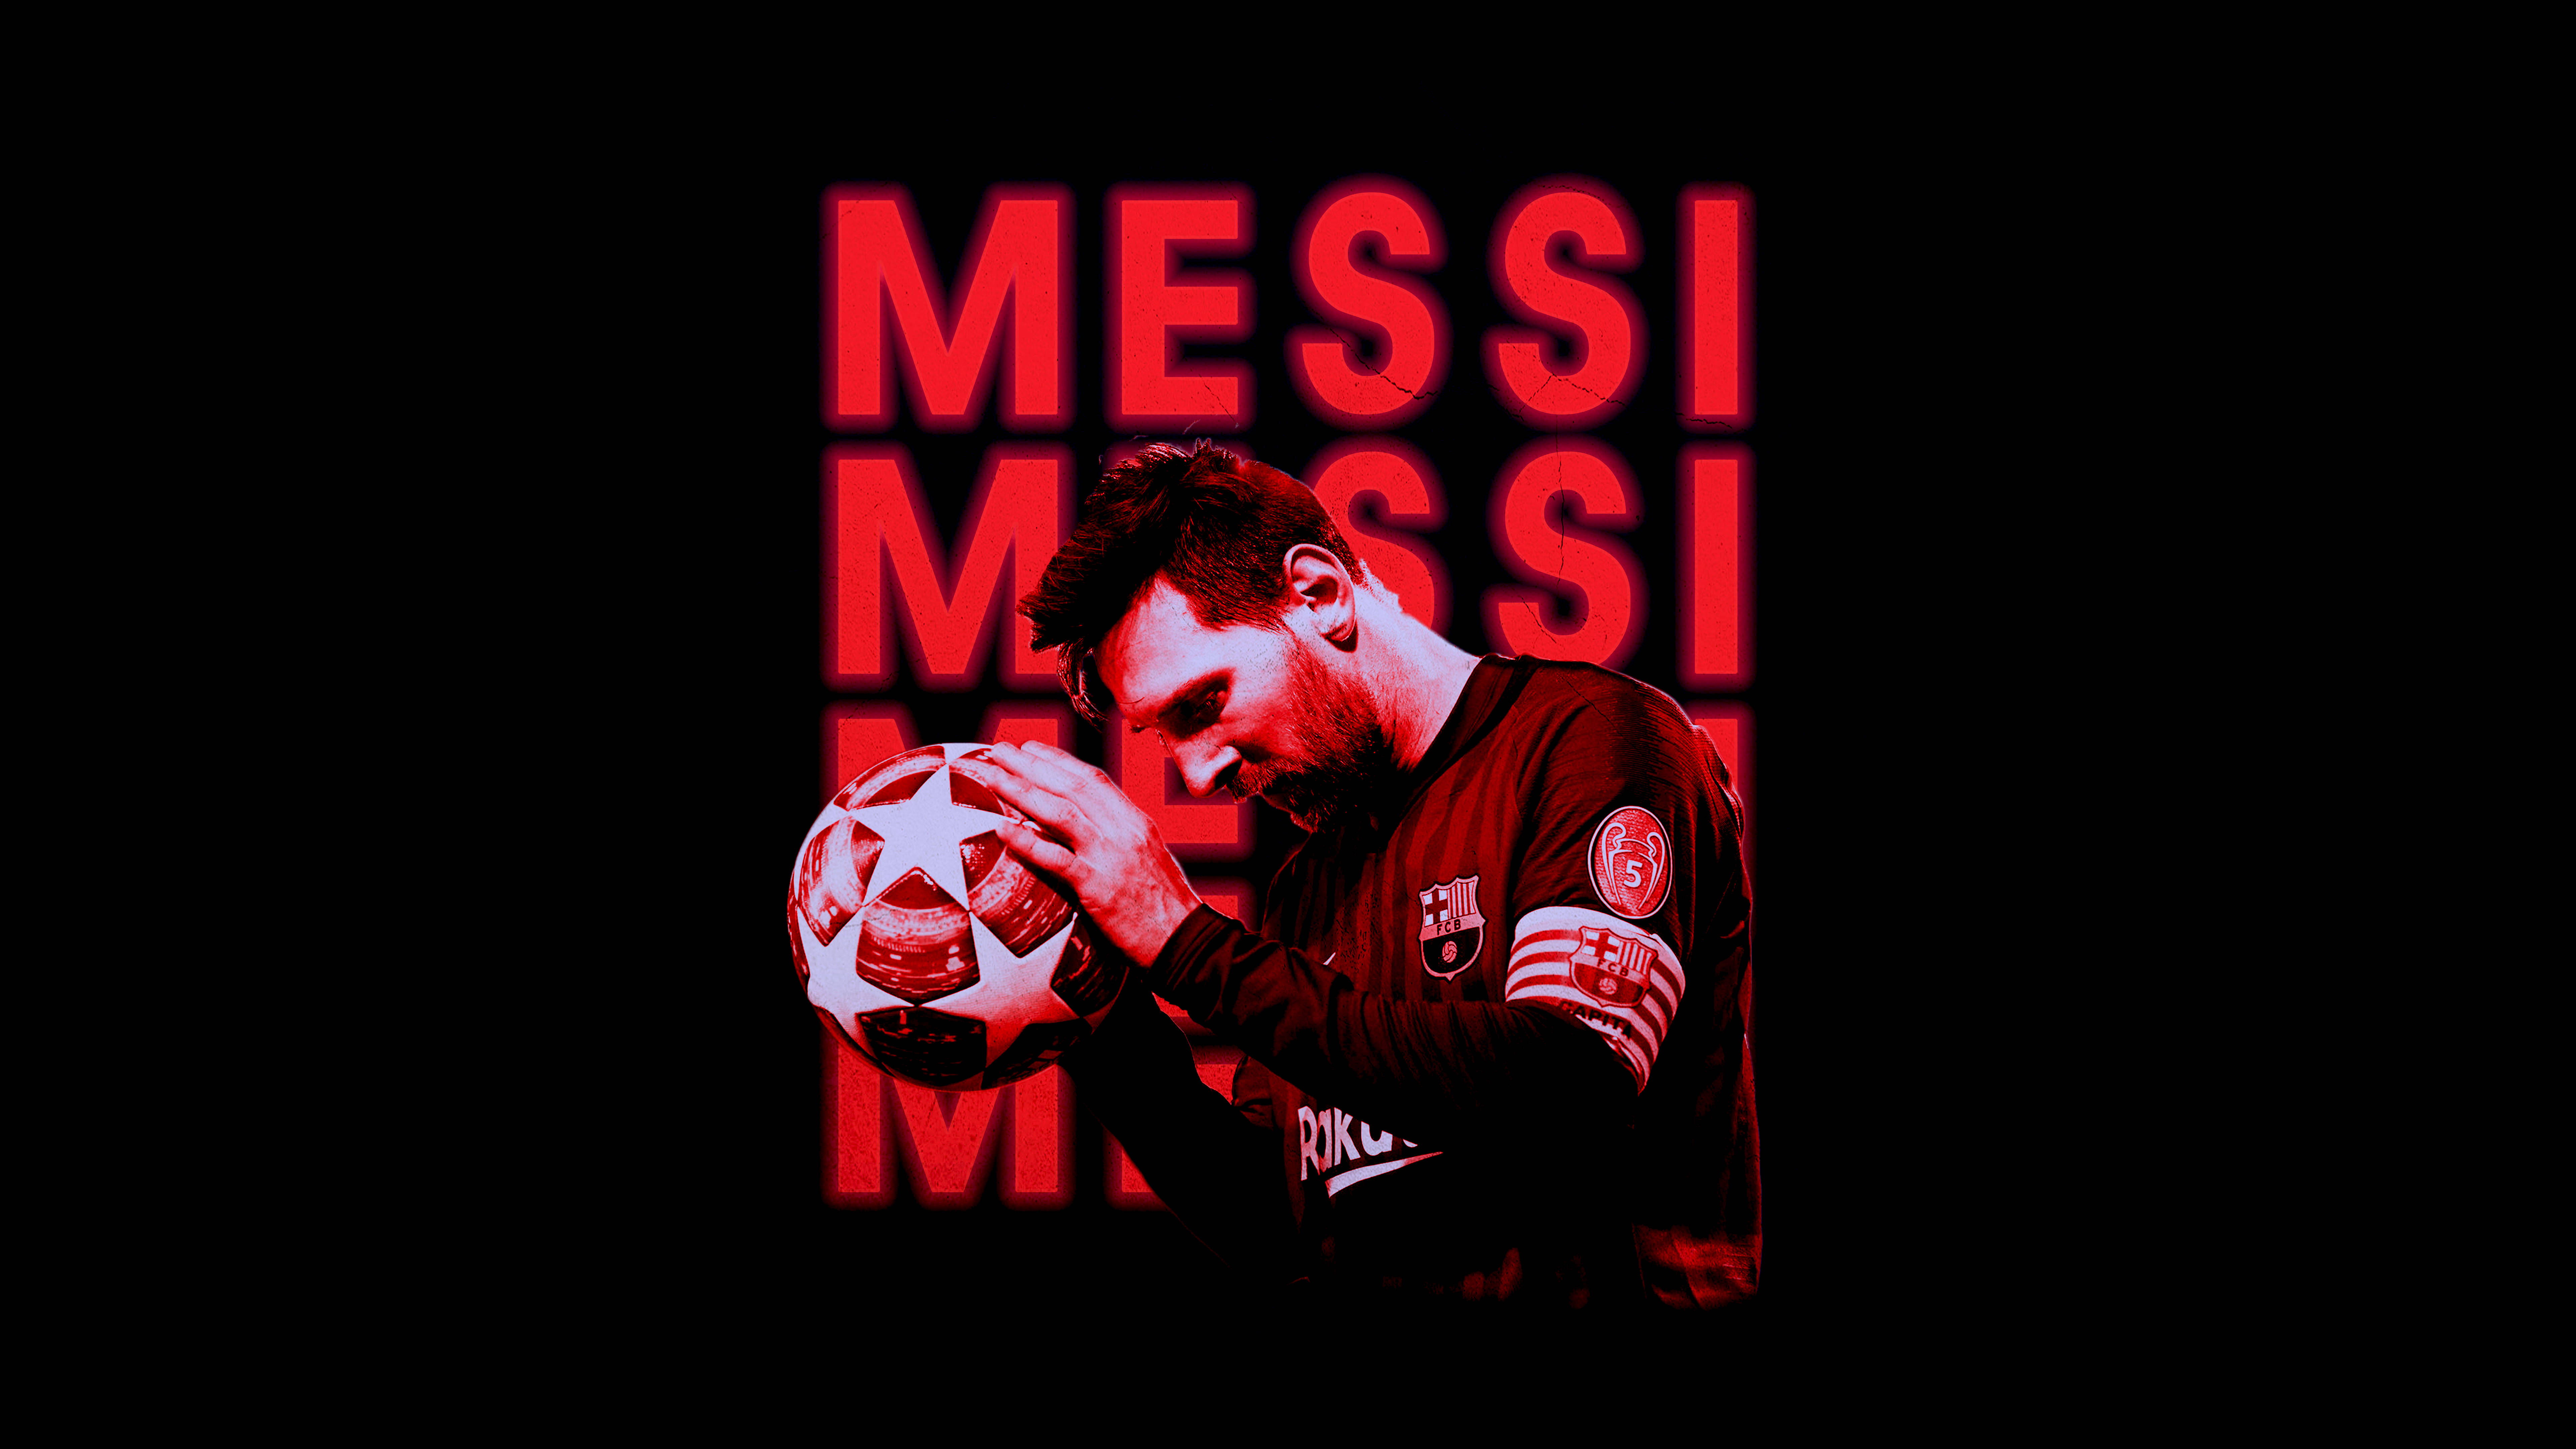 Đừng bỏ lỡ cơ hội để thưởng thức những hình ảnh độc đáo và sắc nét nhất của Lionel Messi trong Ultra HD. Từ kỹ năng, tài năng cho đến những pha bứt tốc tuyệt vời của anh ấy trên sân cỏ, bạn sẽ không thể rời mắt khỏi những hình ảnh này.